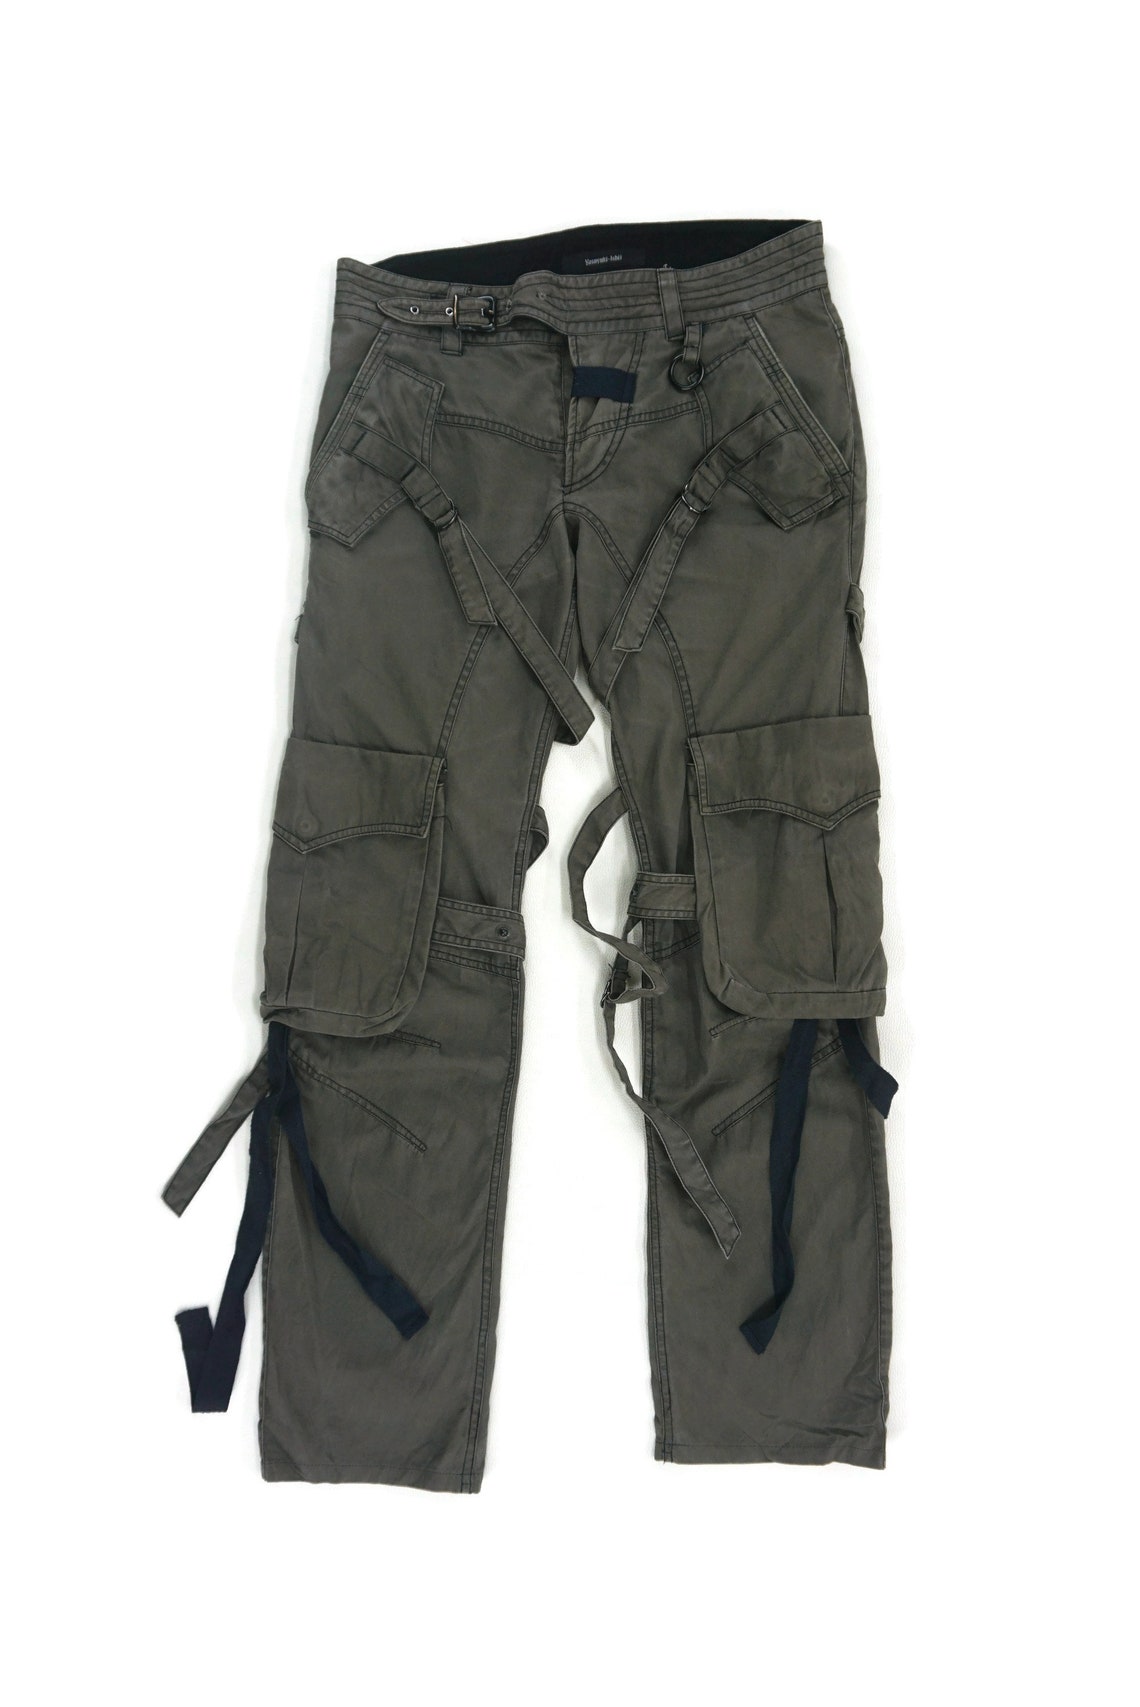 Yasuyuki Ishii Pants Size S W33xL30.5 Yasuyuki Ishii Cargo | Etsy